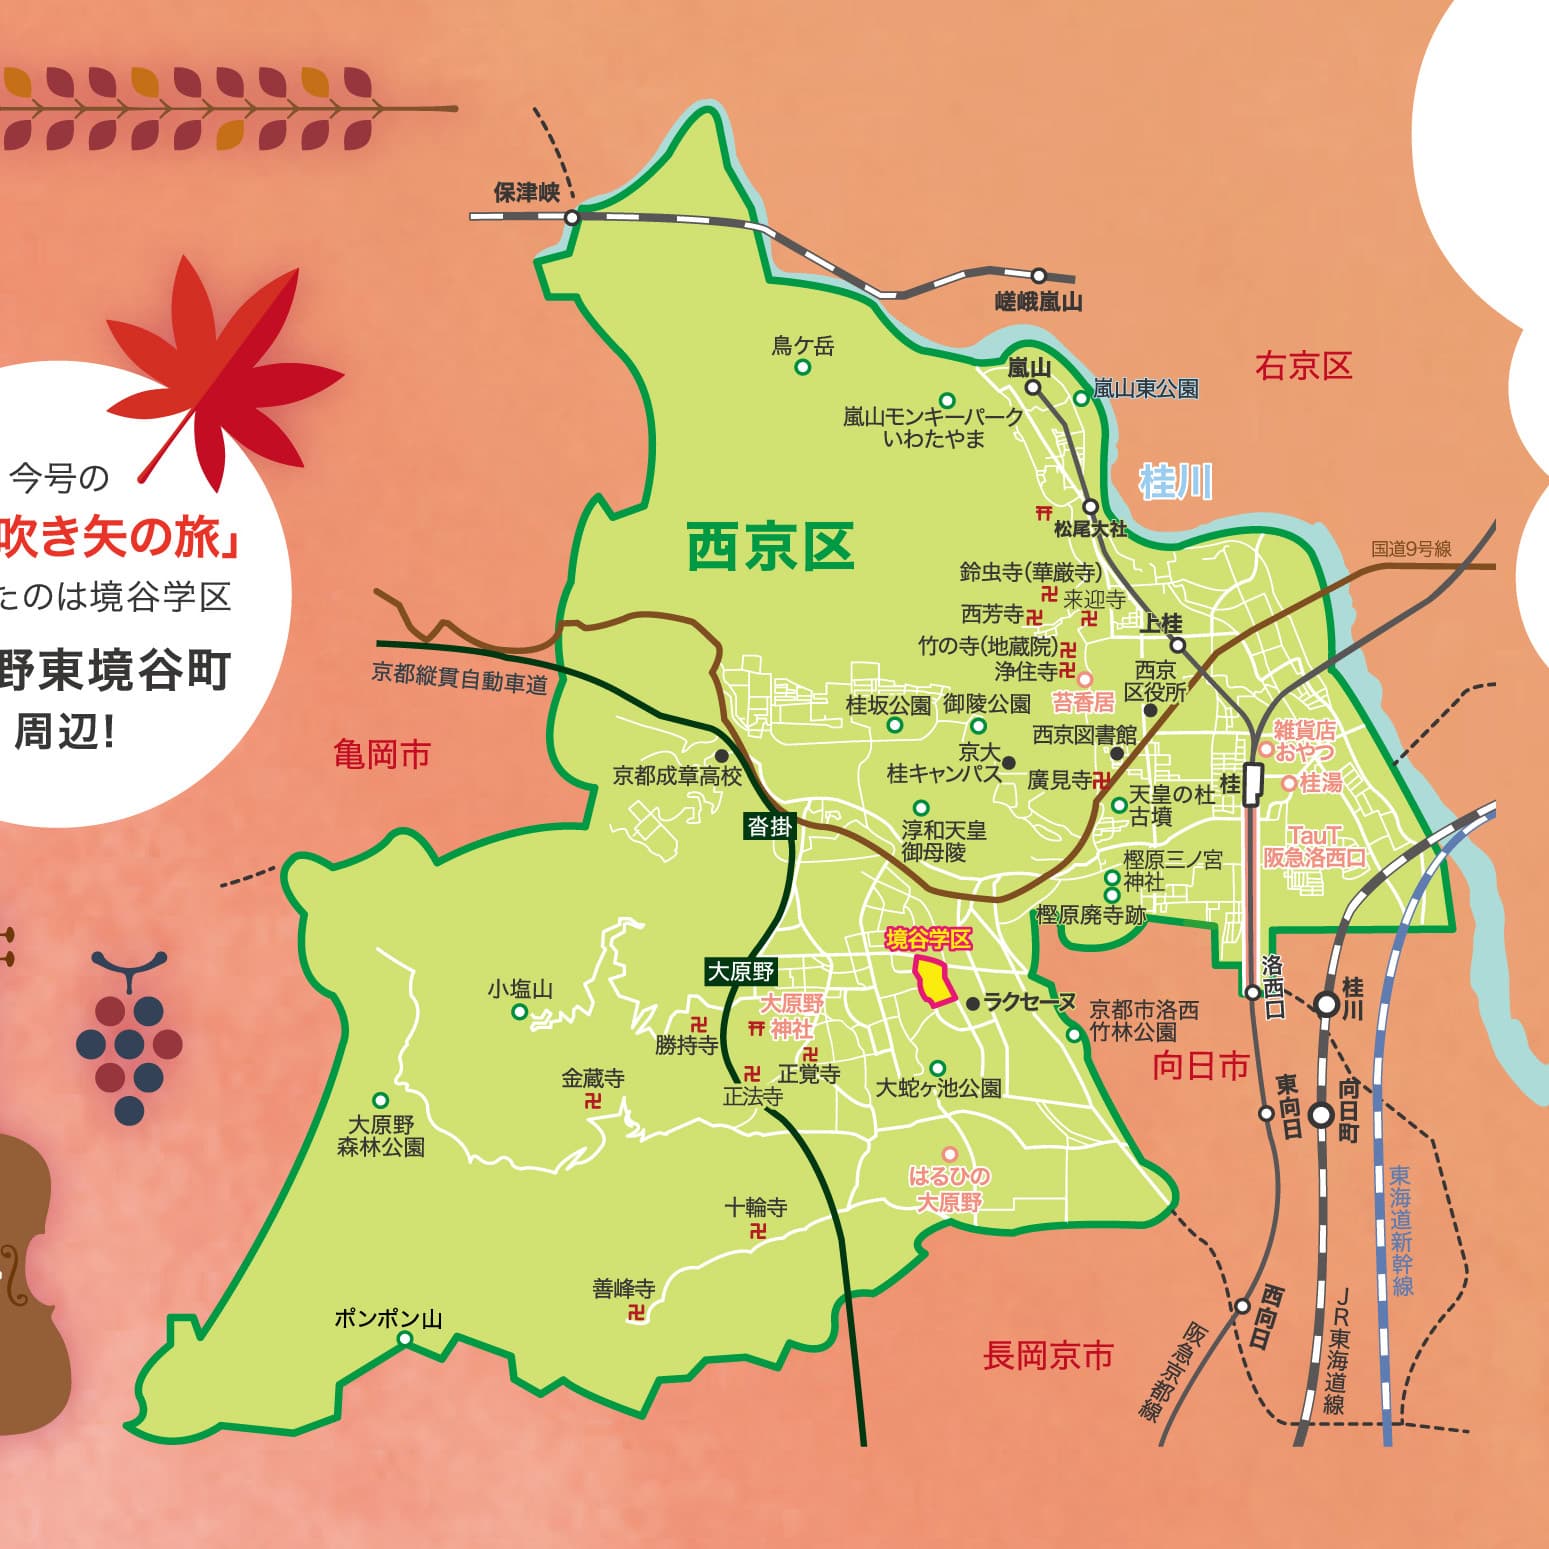 P.18 西京探索マップのイメージ